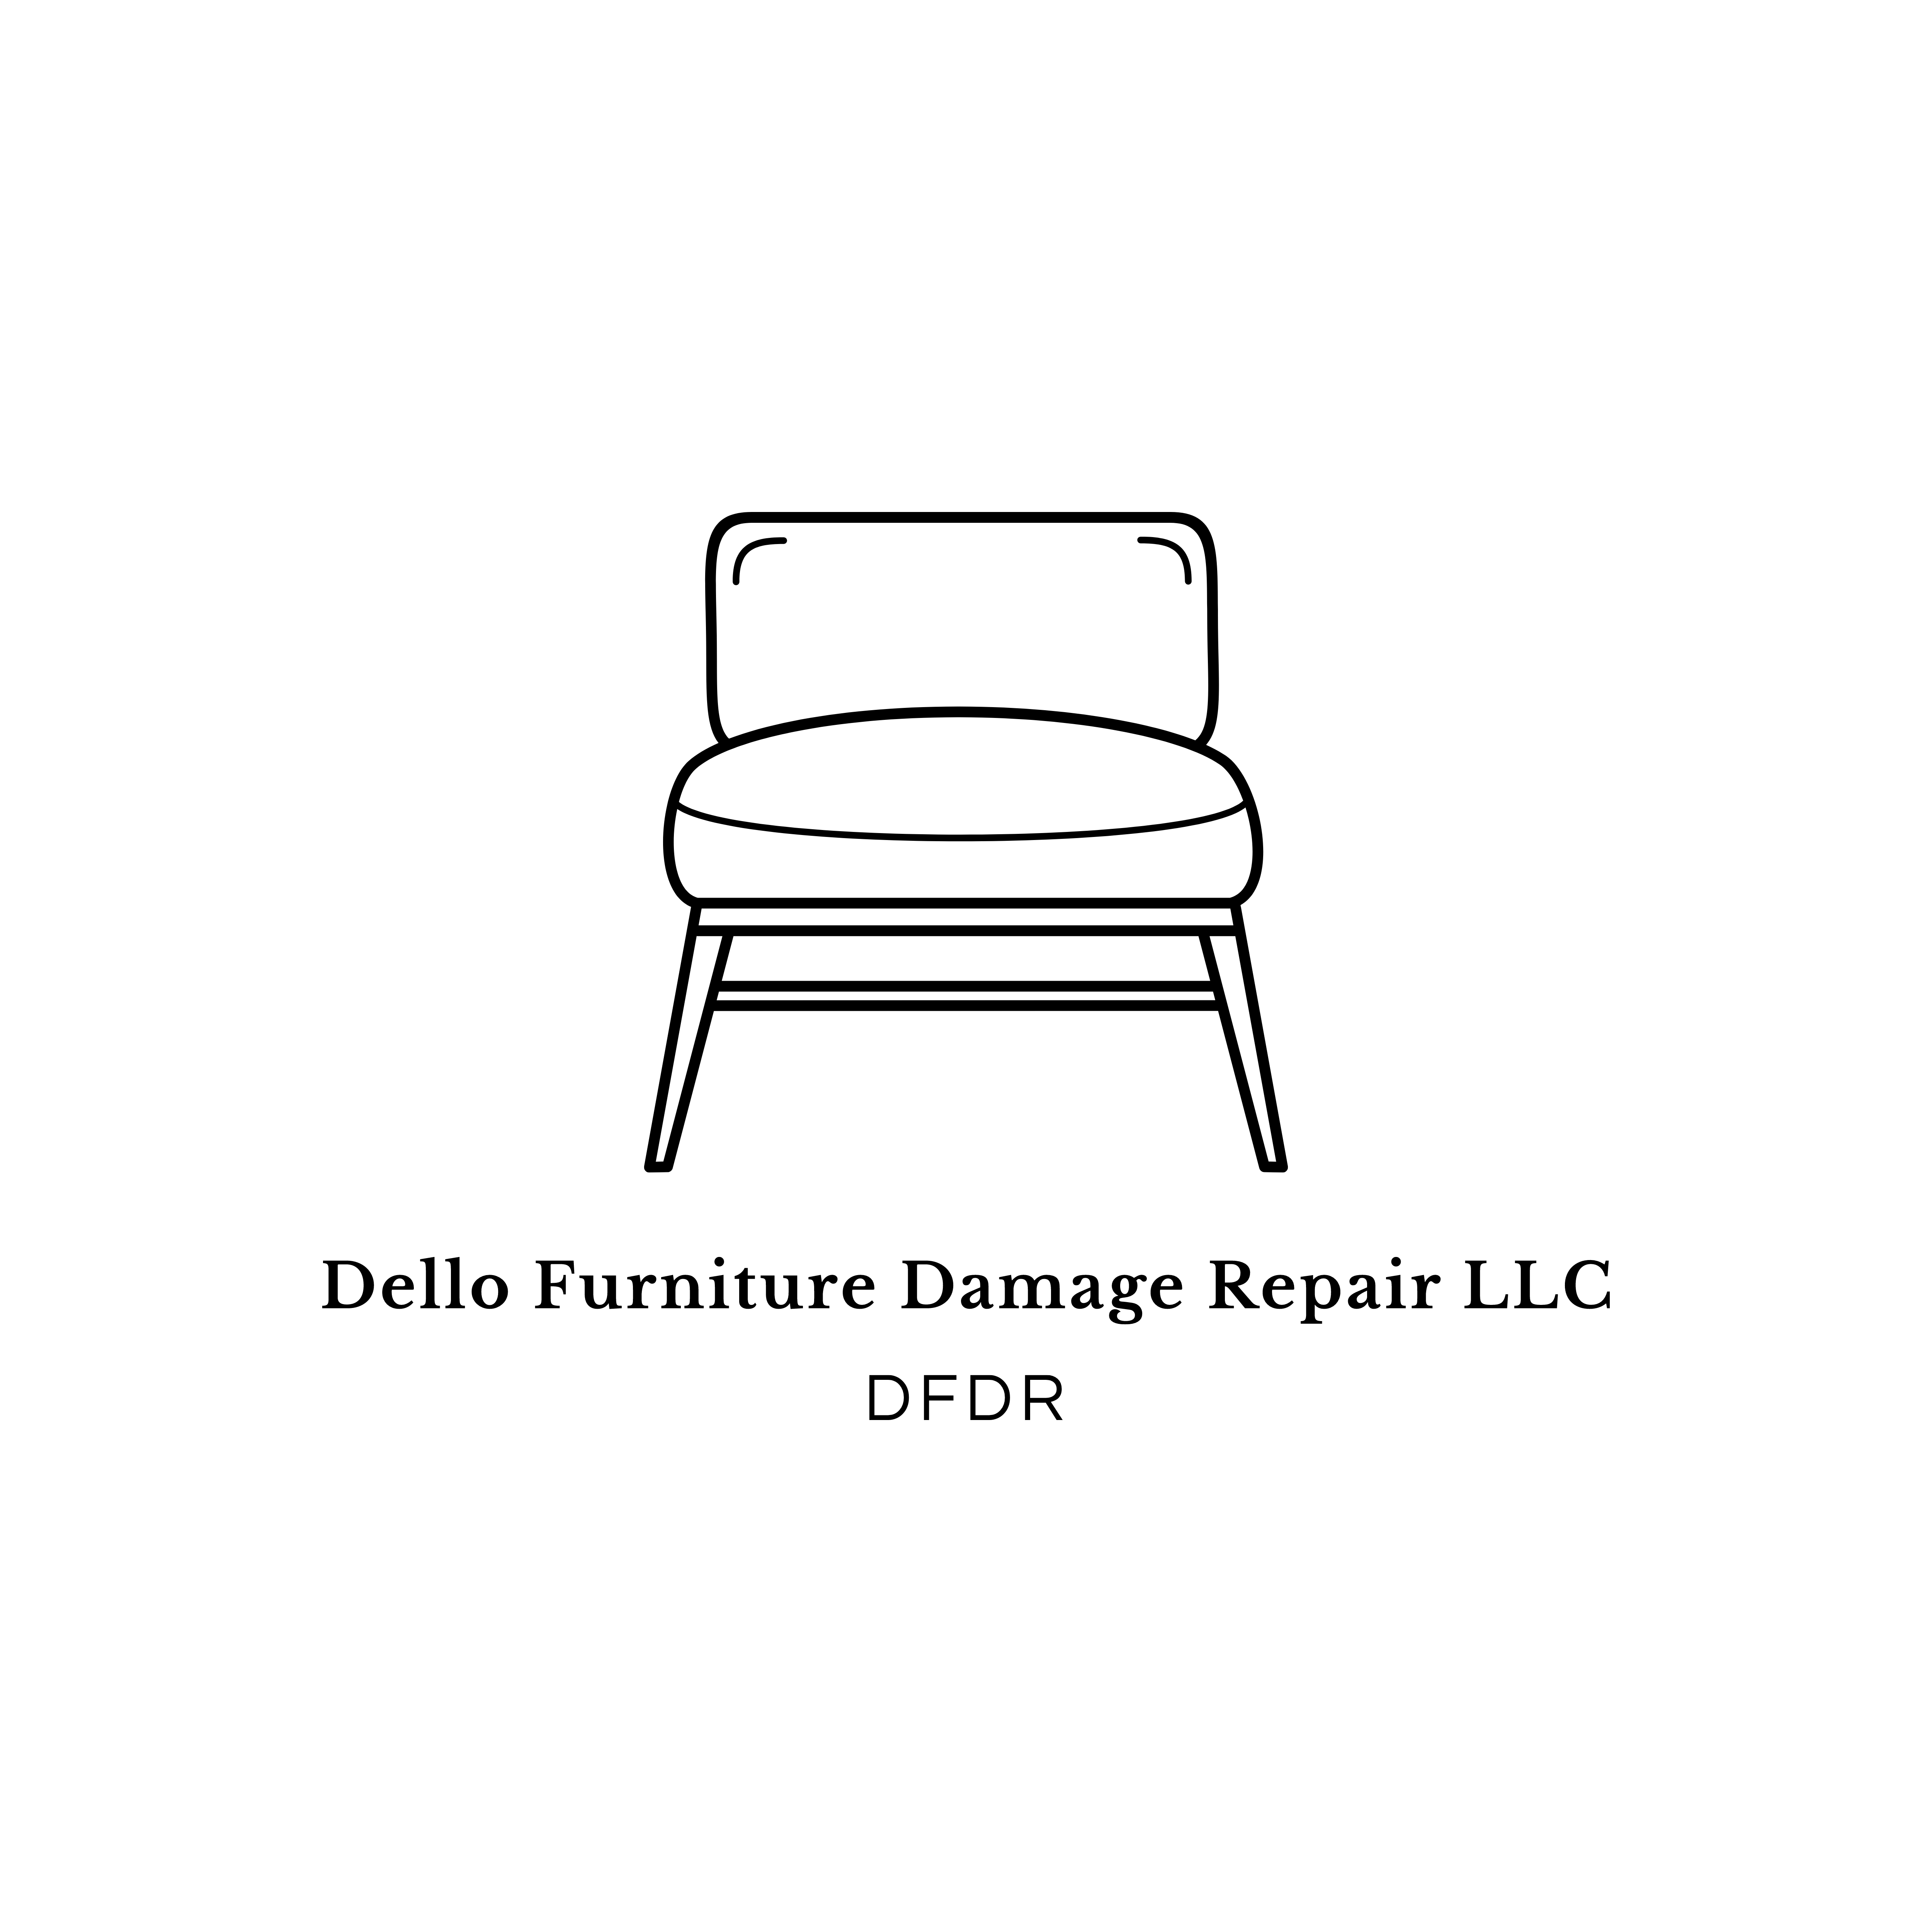 Dello Furniture Damage Repair LLC Logo